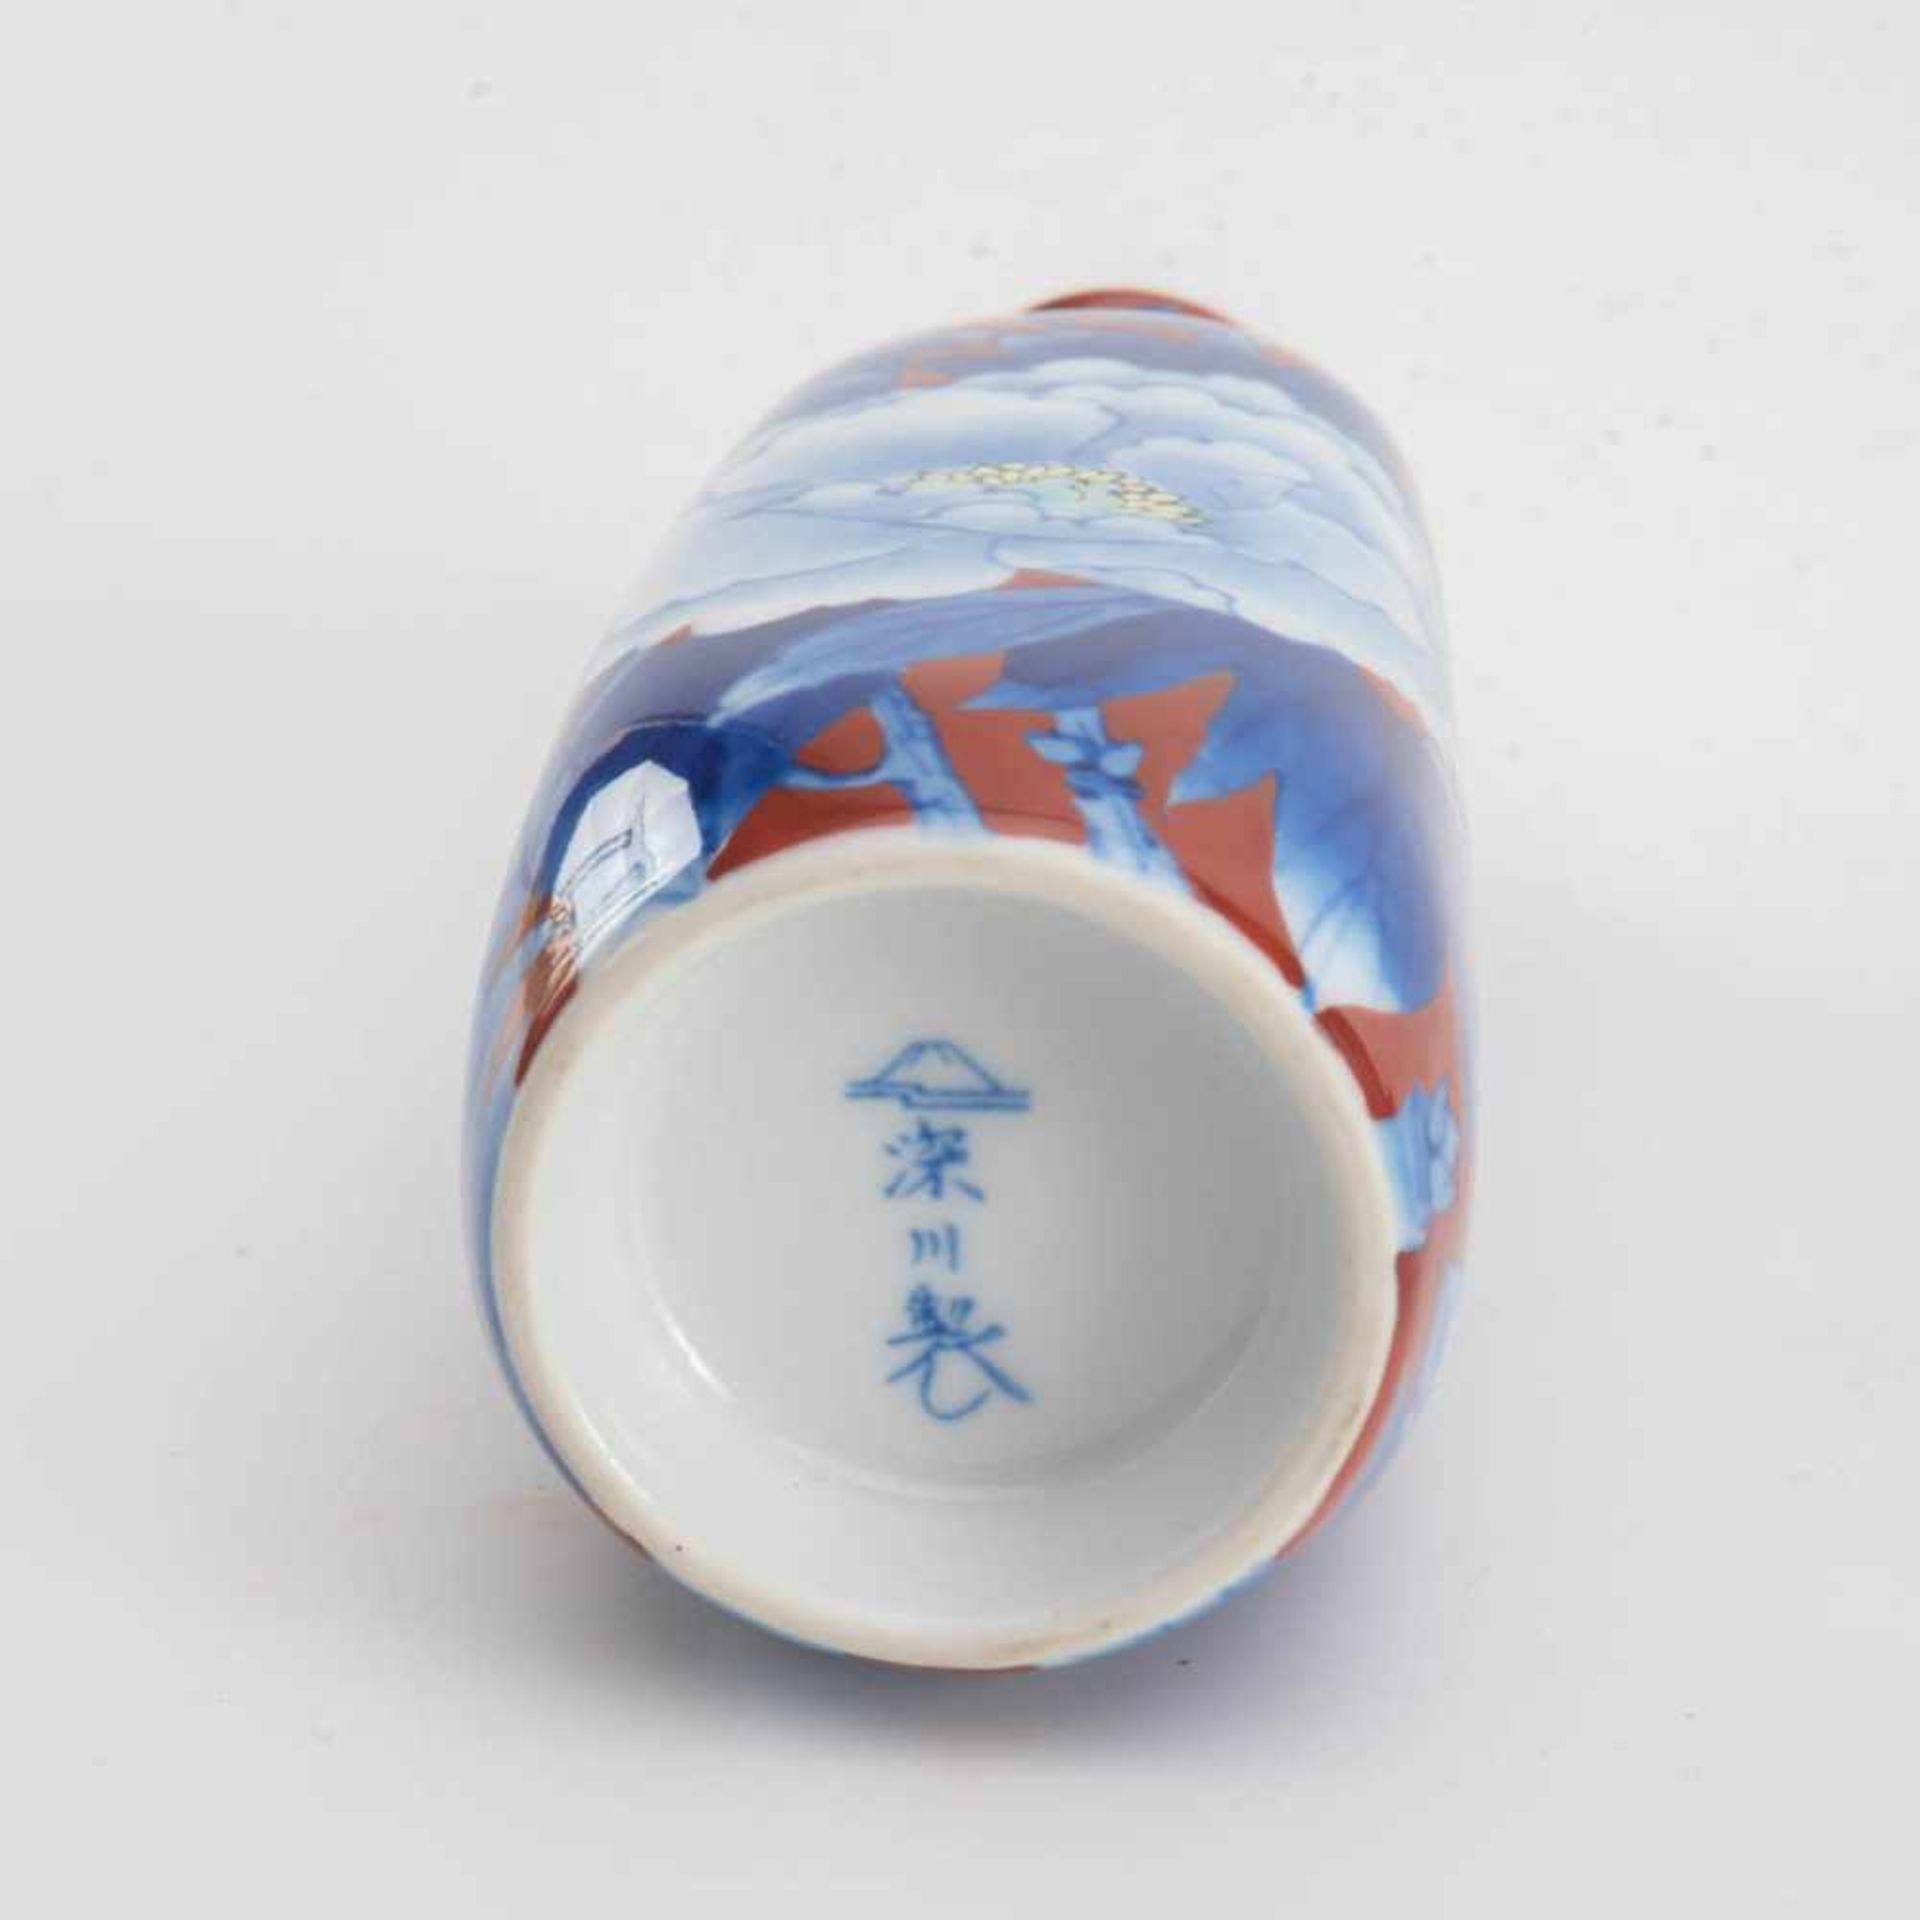 5-teiliges Sake-Service, Japan Porzellan auf eisenrotem Fond mit großen Päonienblüten und - Bild 2 aus 2